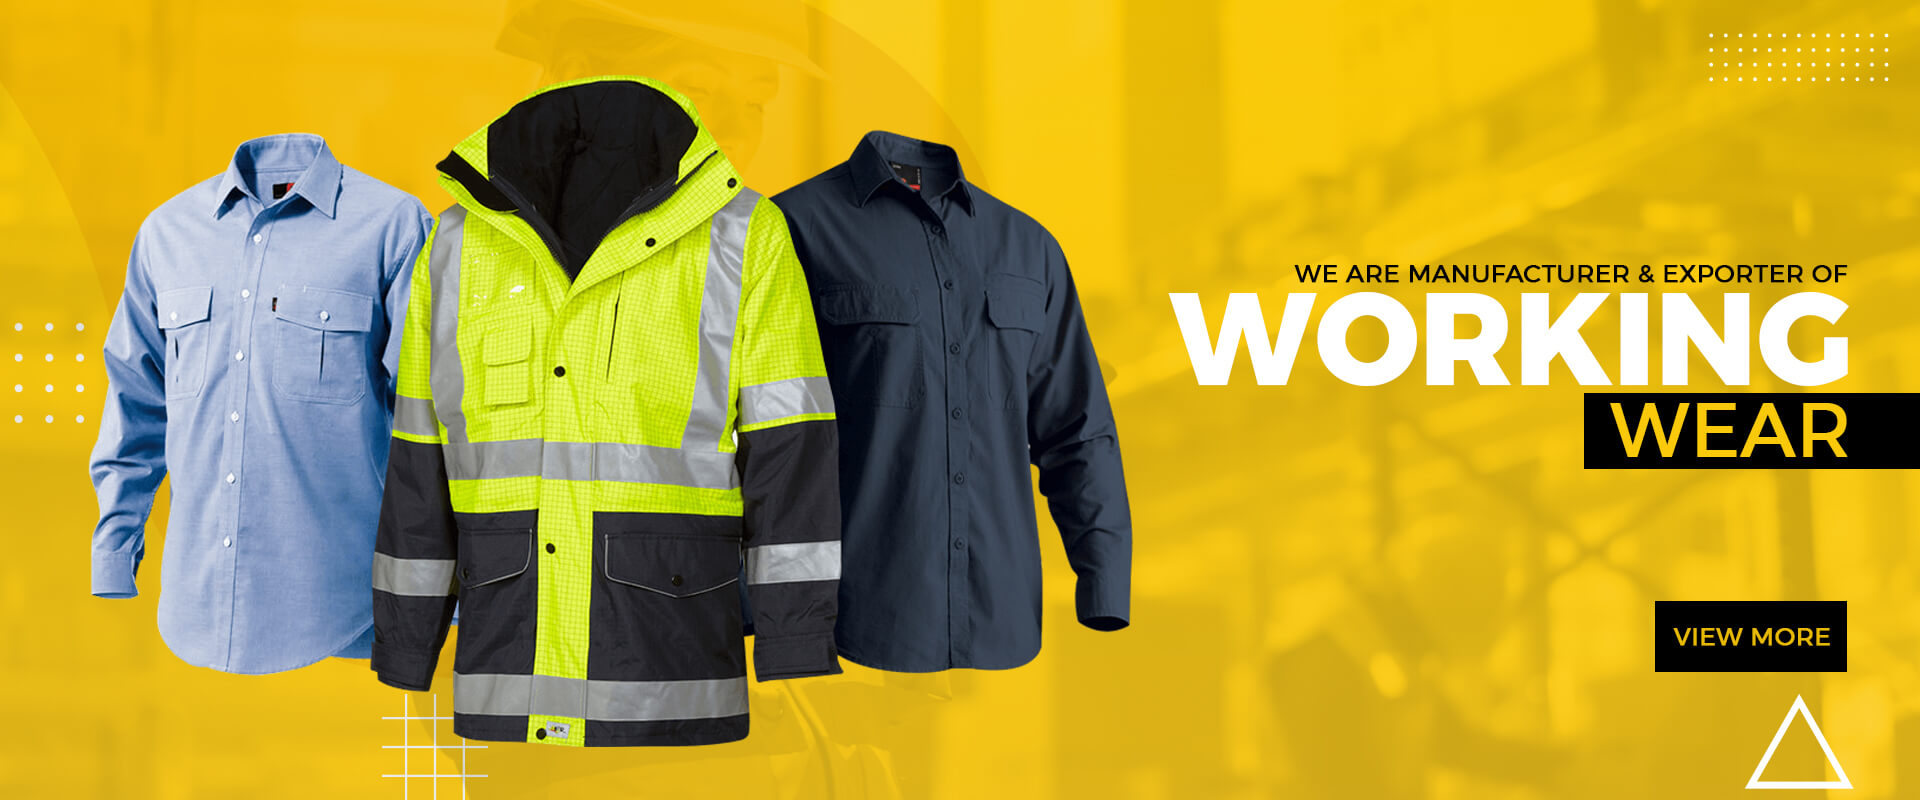 Work - safety wear